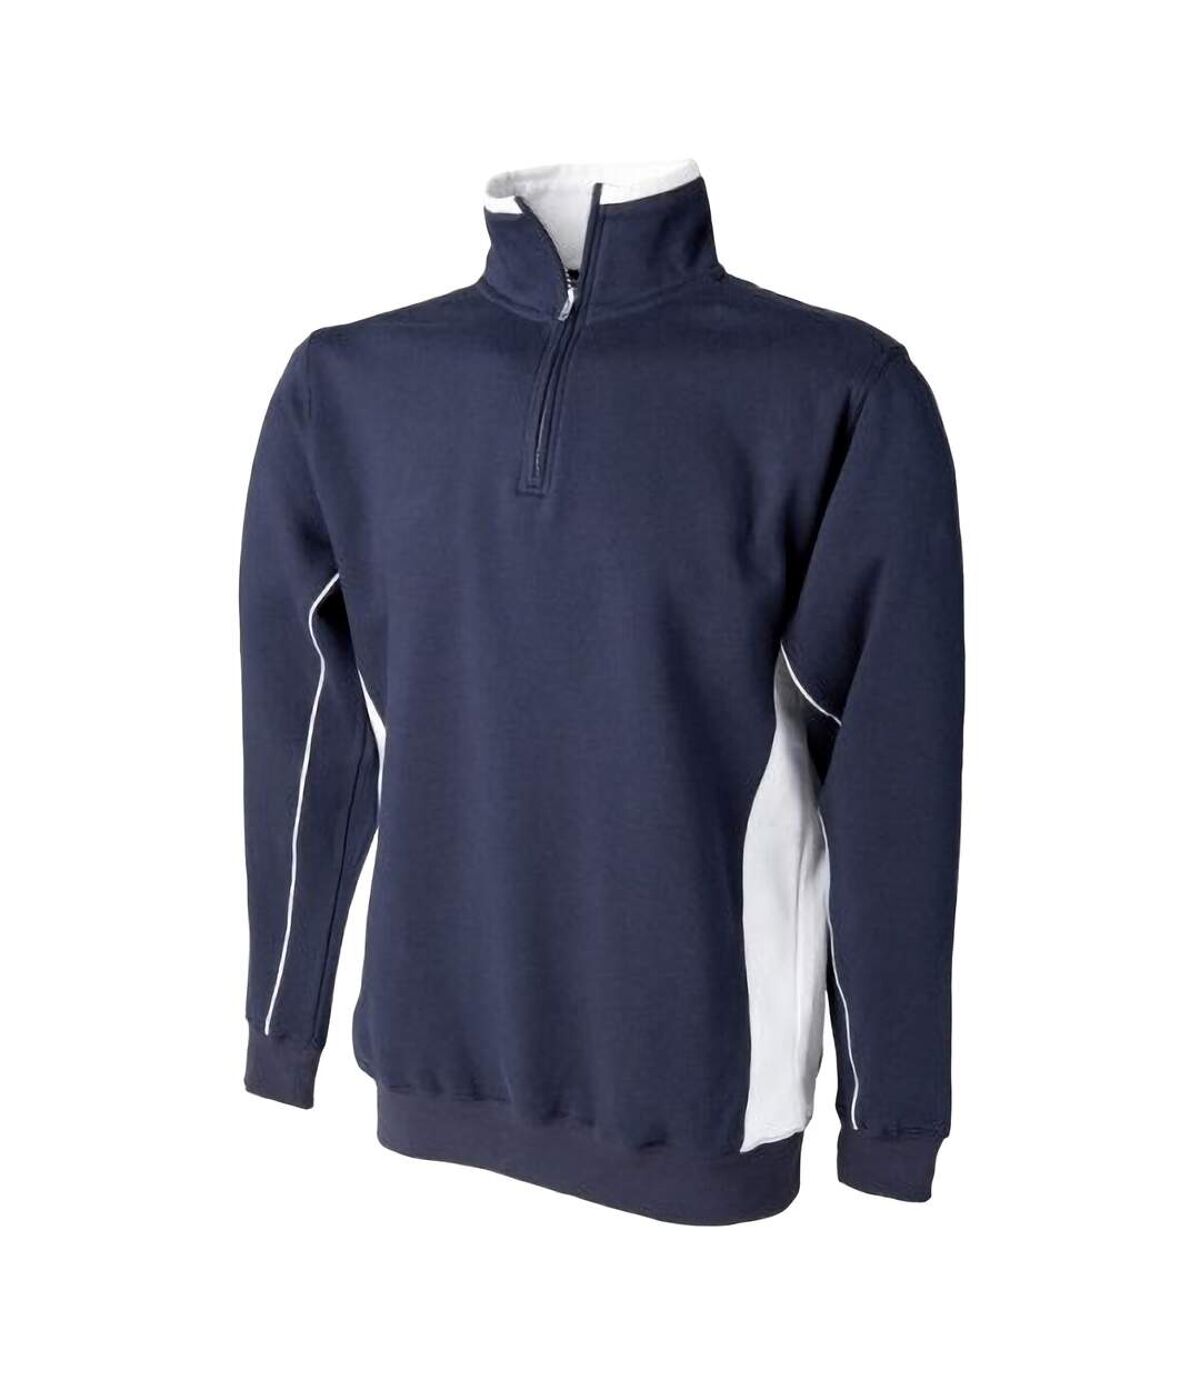 Finden & Hales Mens 1/4 Zip Sweatshirt Top (Navy/White)